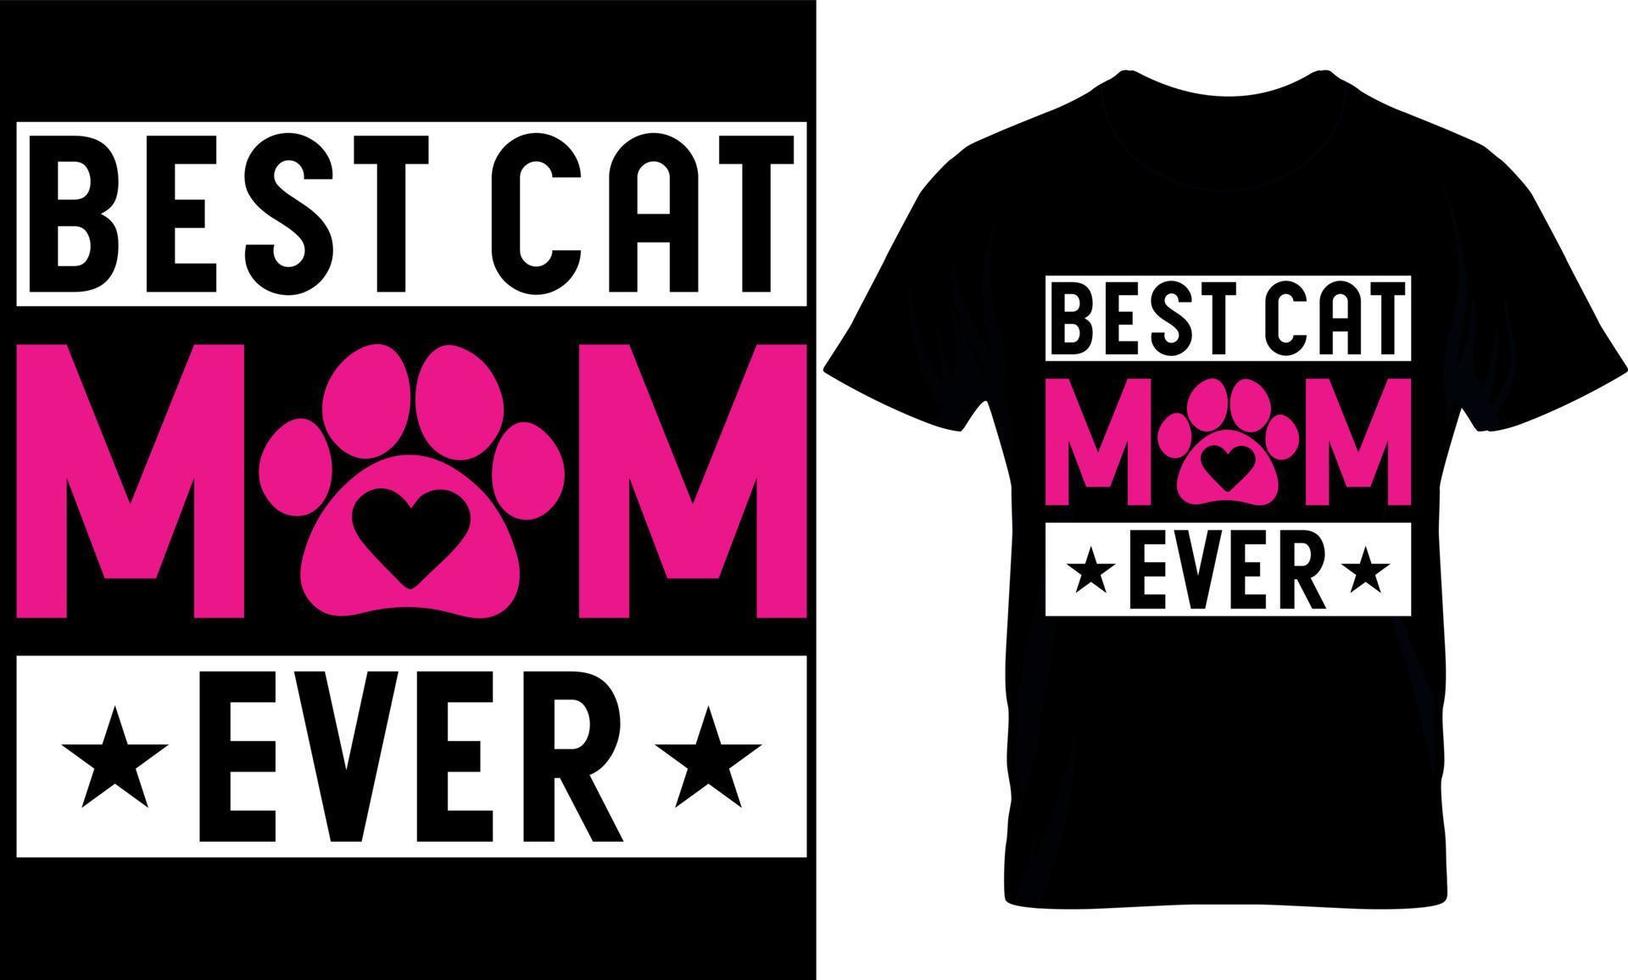 meilleure maman chat de tous les temps. conception de t-shirt chat, conception de t-shirt chats. vecteur